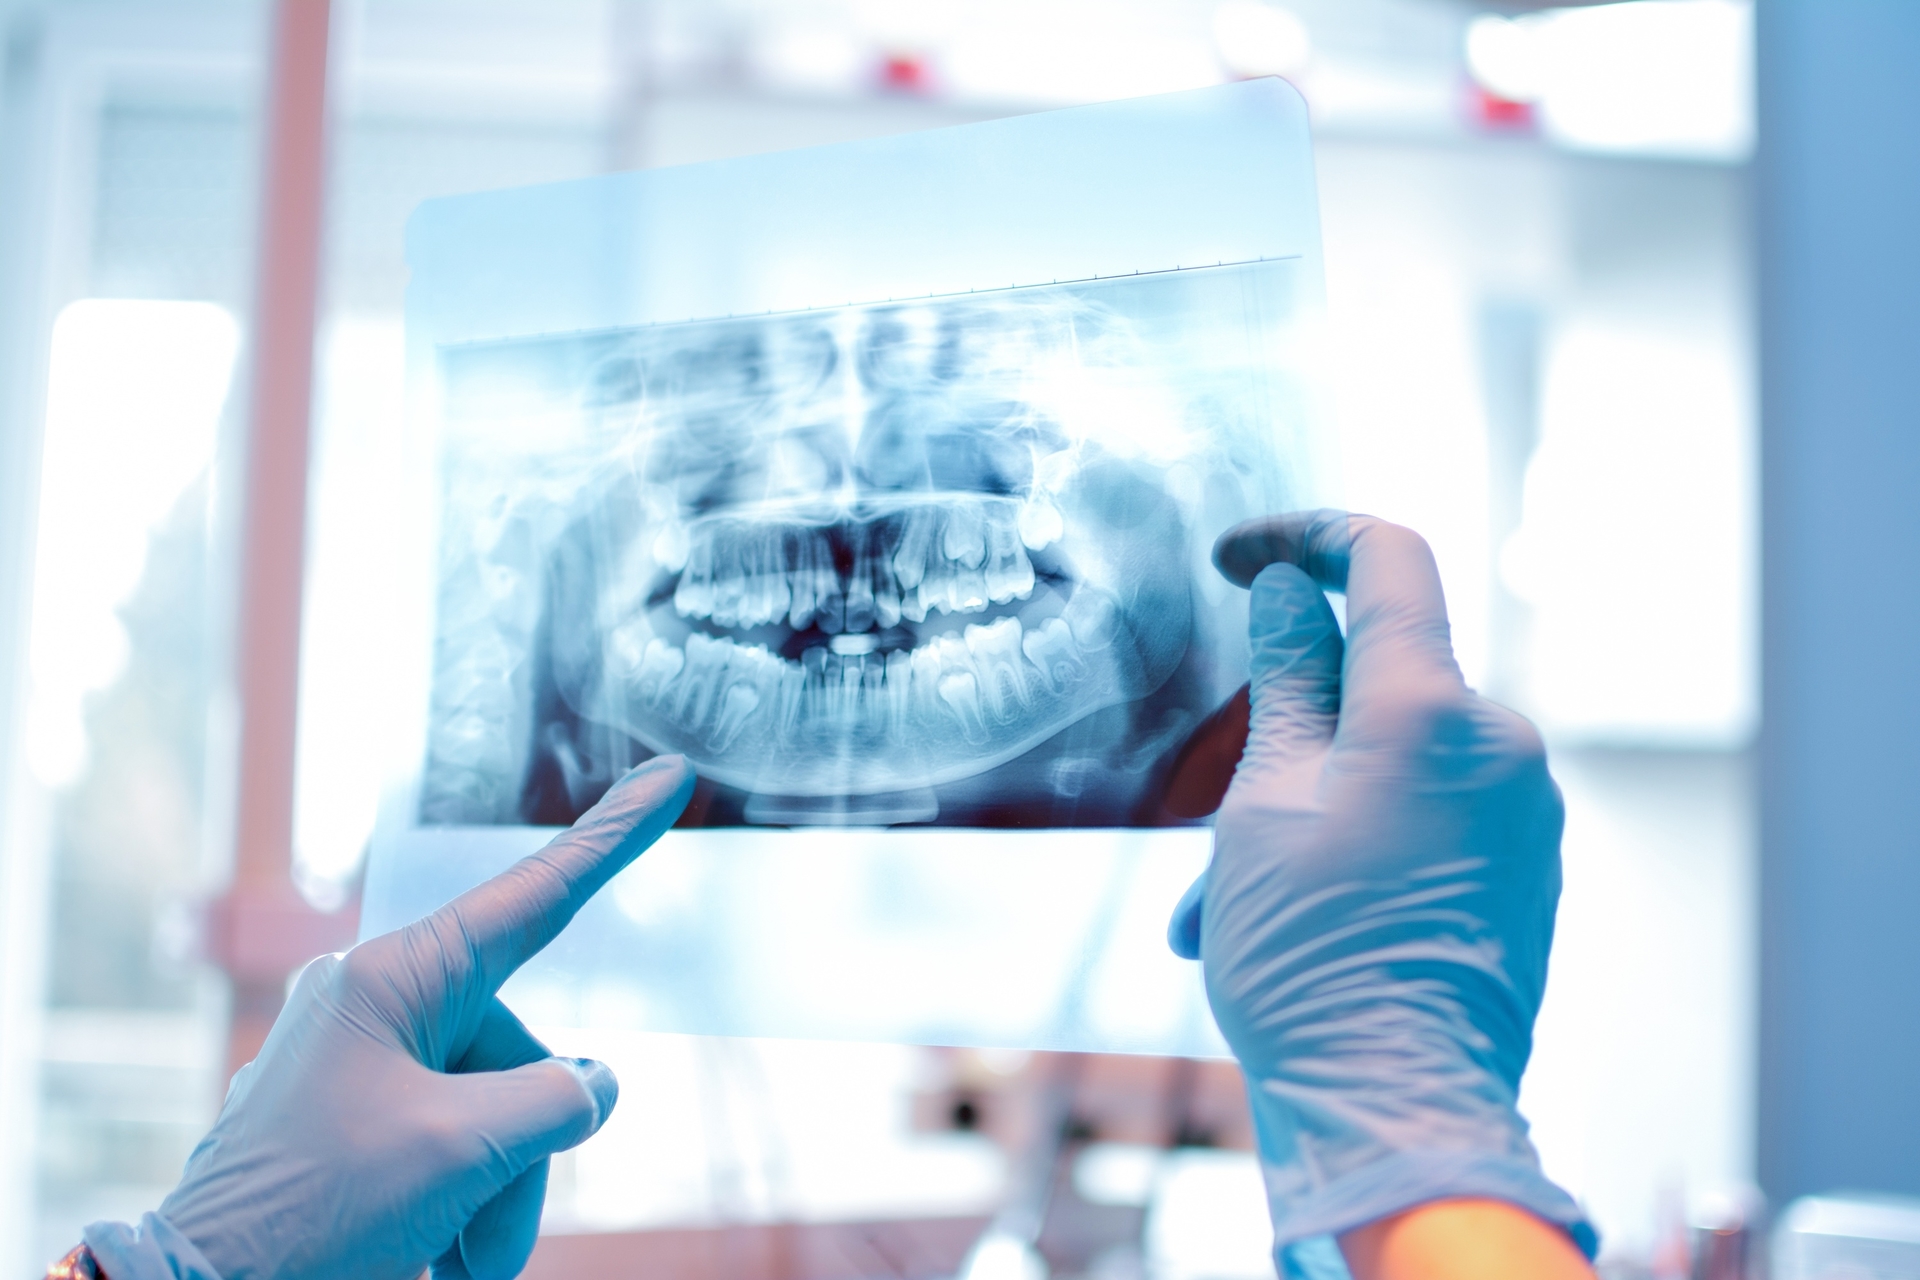 Oral-dental radiology images